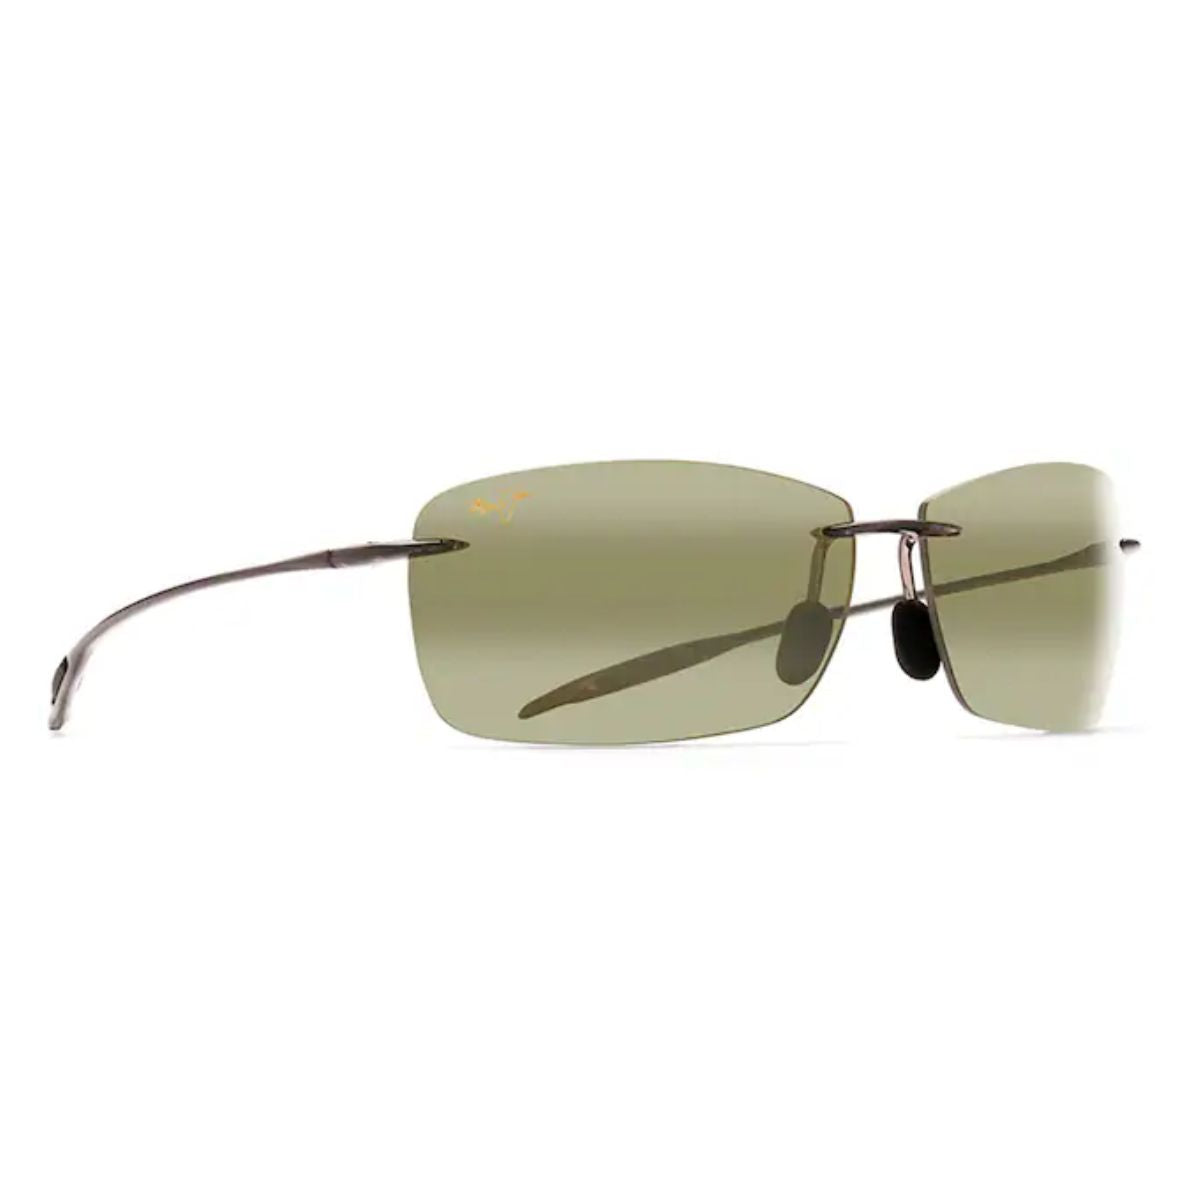 "Buy Trending Maui Jim Lighthouse Glossy Green Sunglasses for mens"